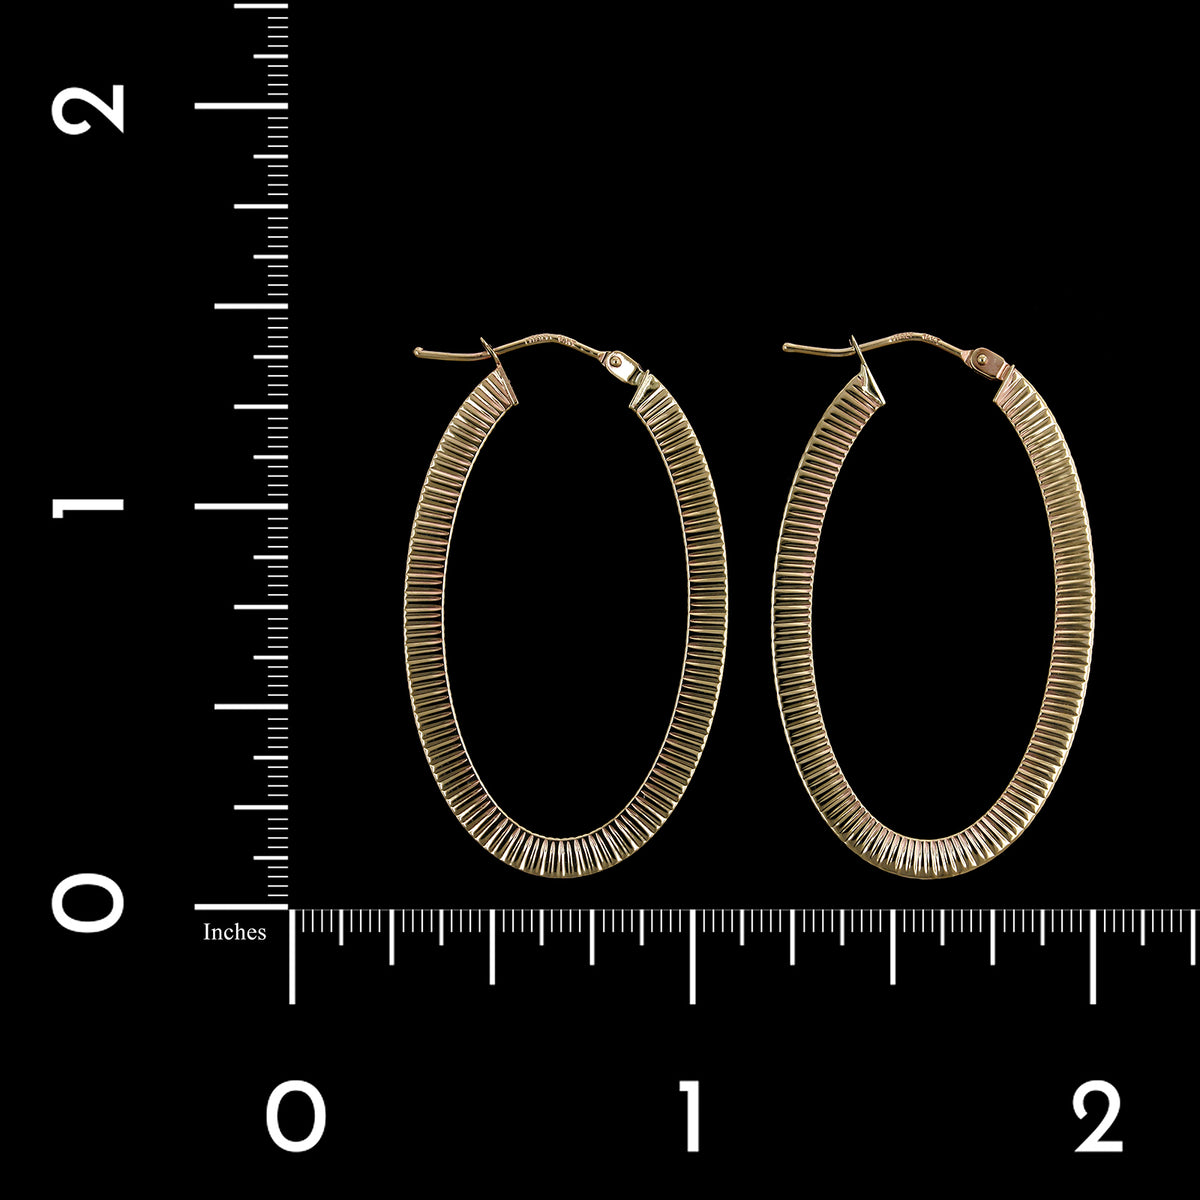 14K Yellow Gold Estate Oval Hoop Earrings